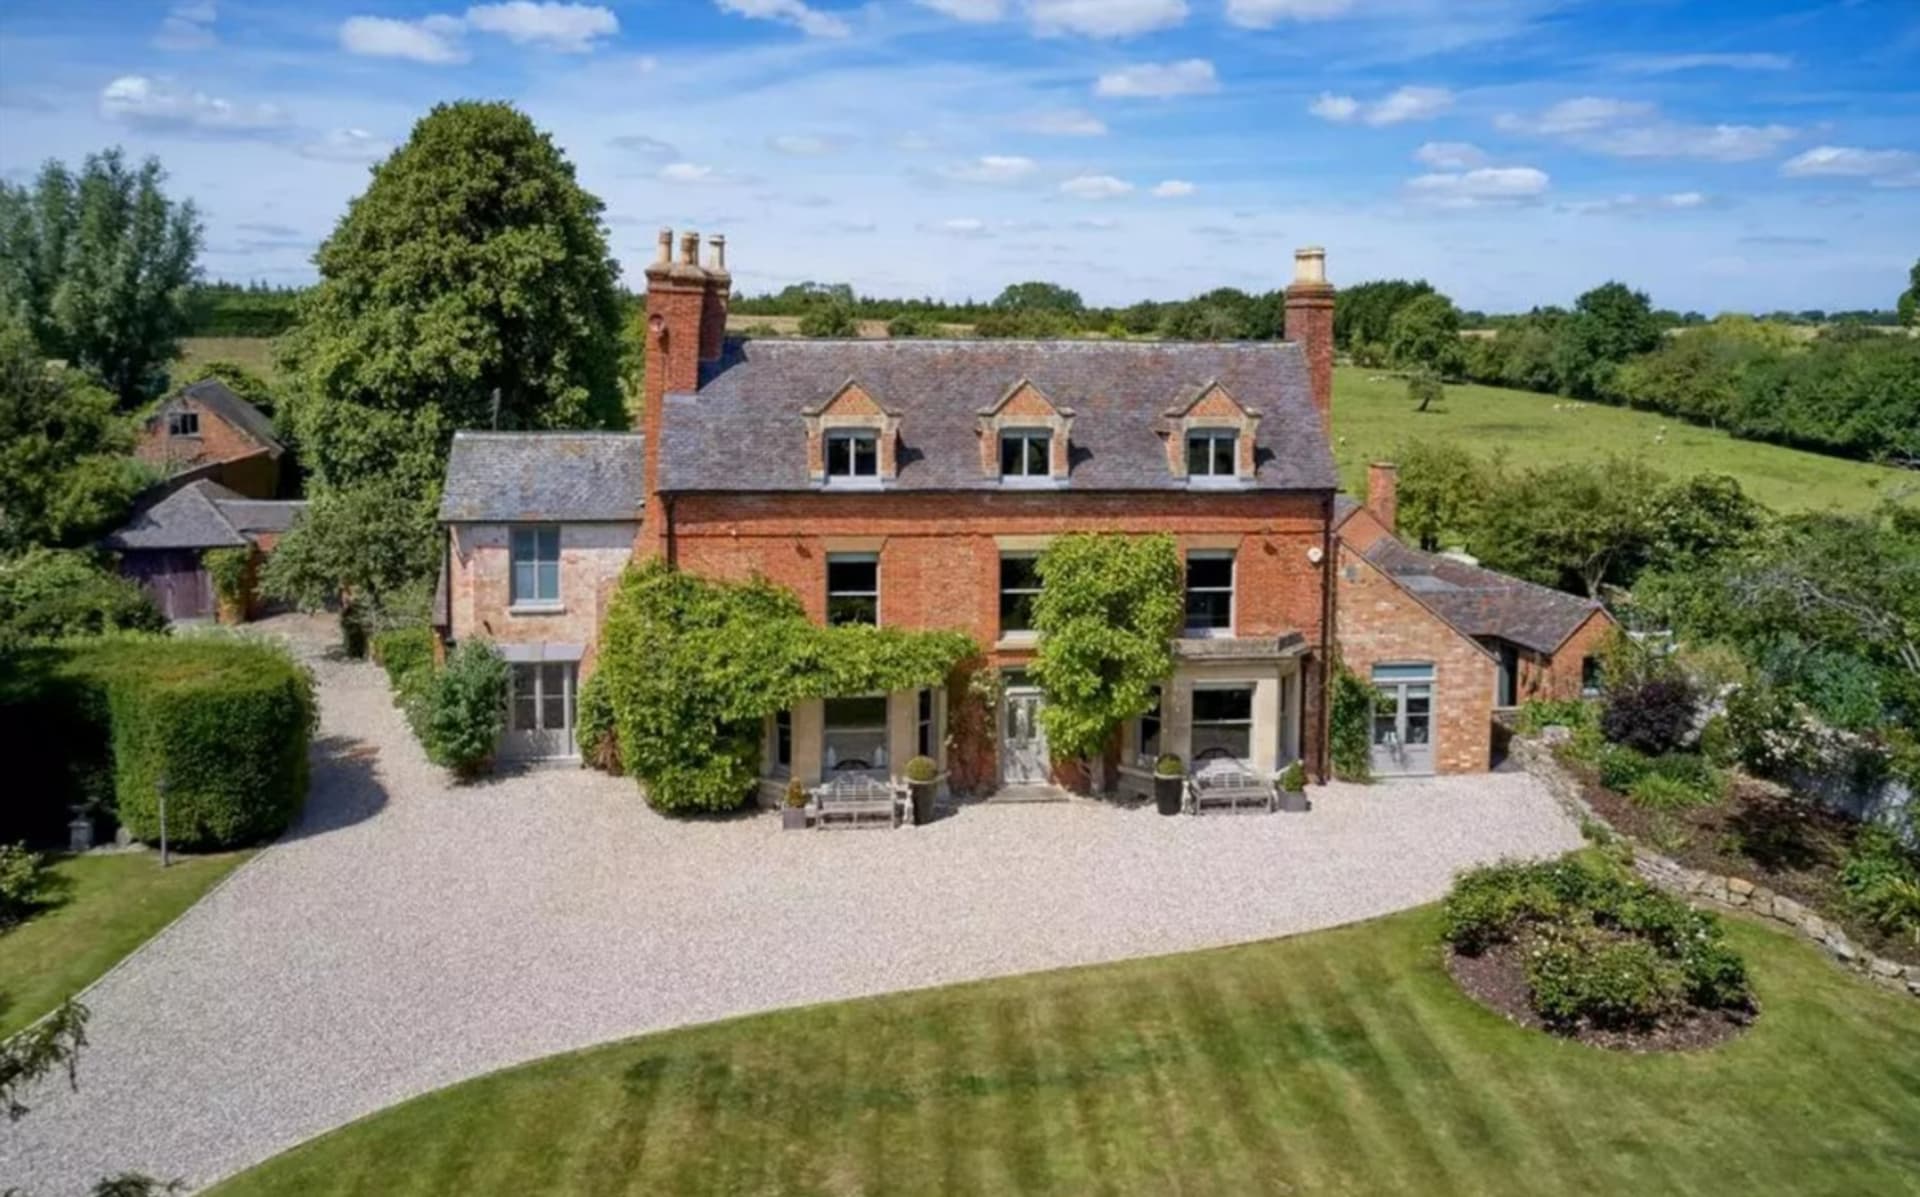 Luddington Manor: Venkovské sídlo, který je nyní k prodeji za 2,7 milionu liber, tedy okolo 76 milionů korun se nachází nedaleko Stradfordu nad Avonou. 